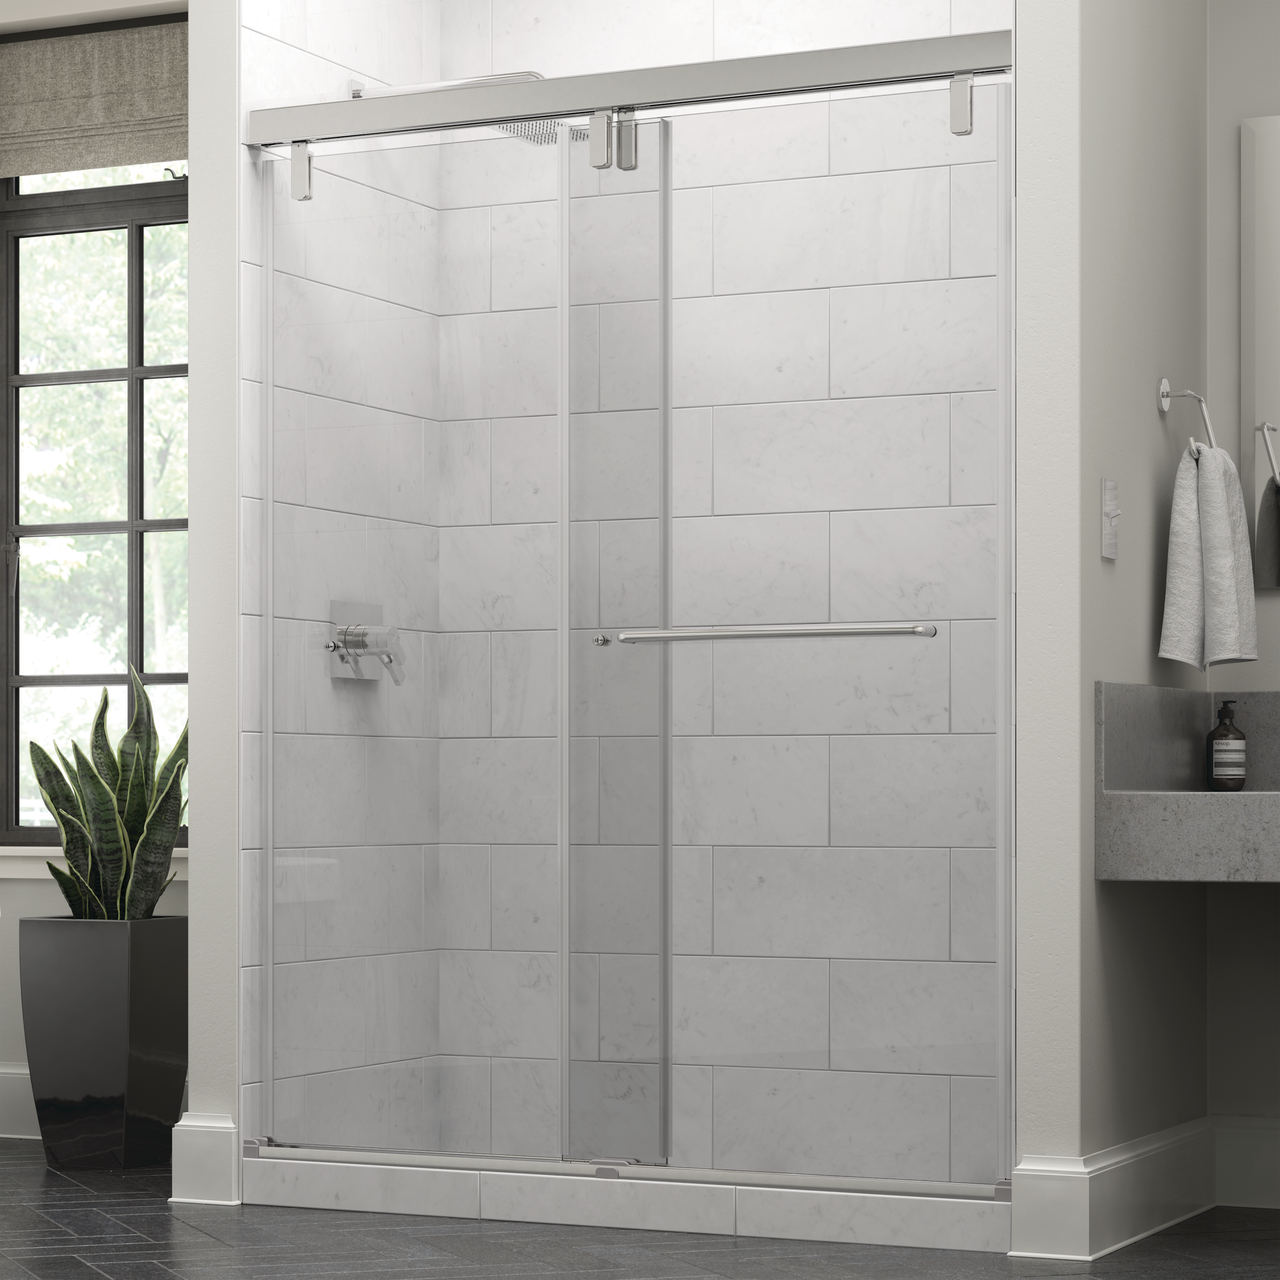 Mod 10mm Shower Door with Simplicity Handle